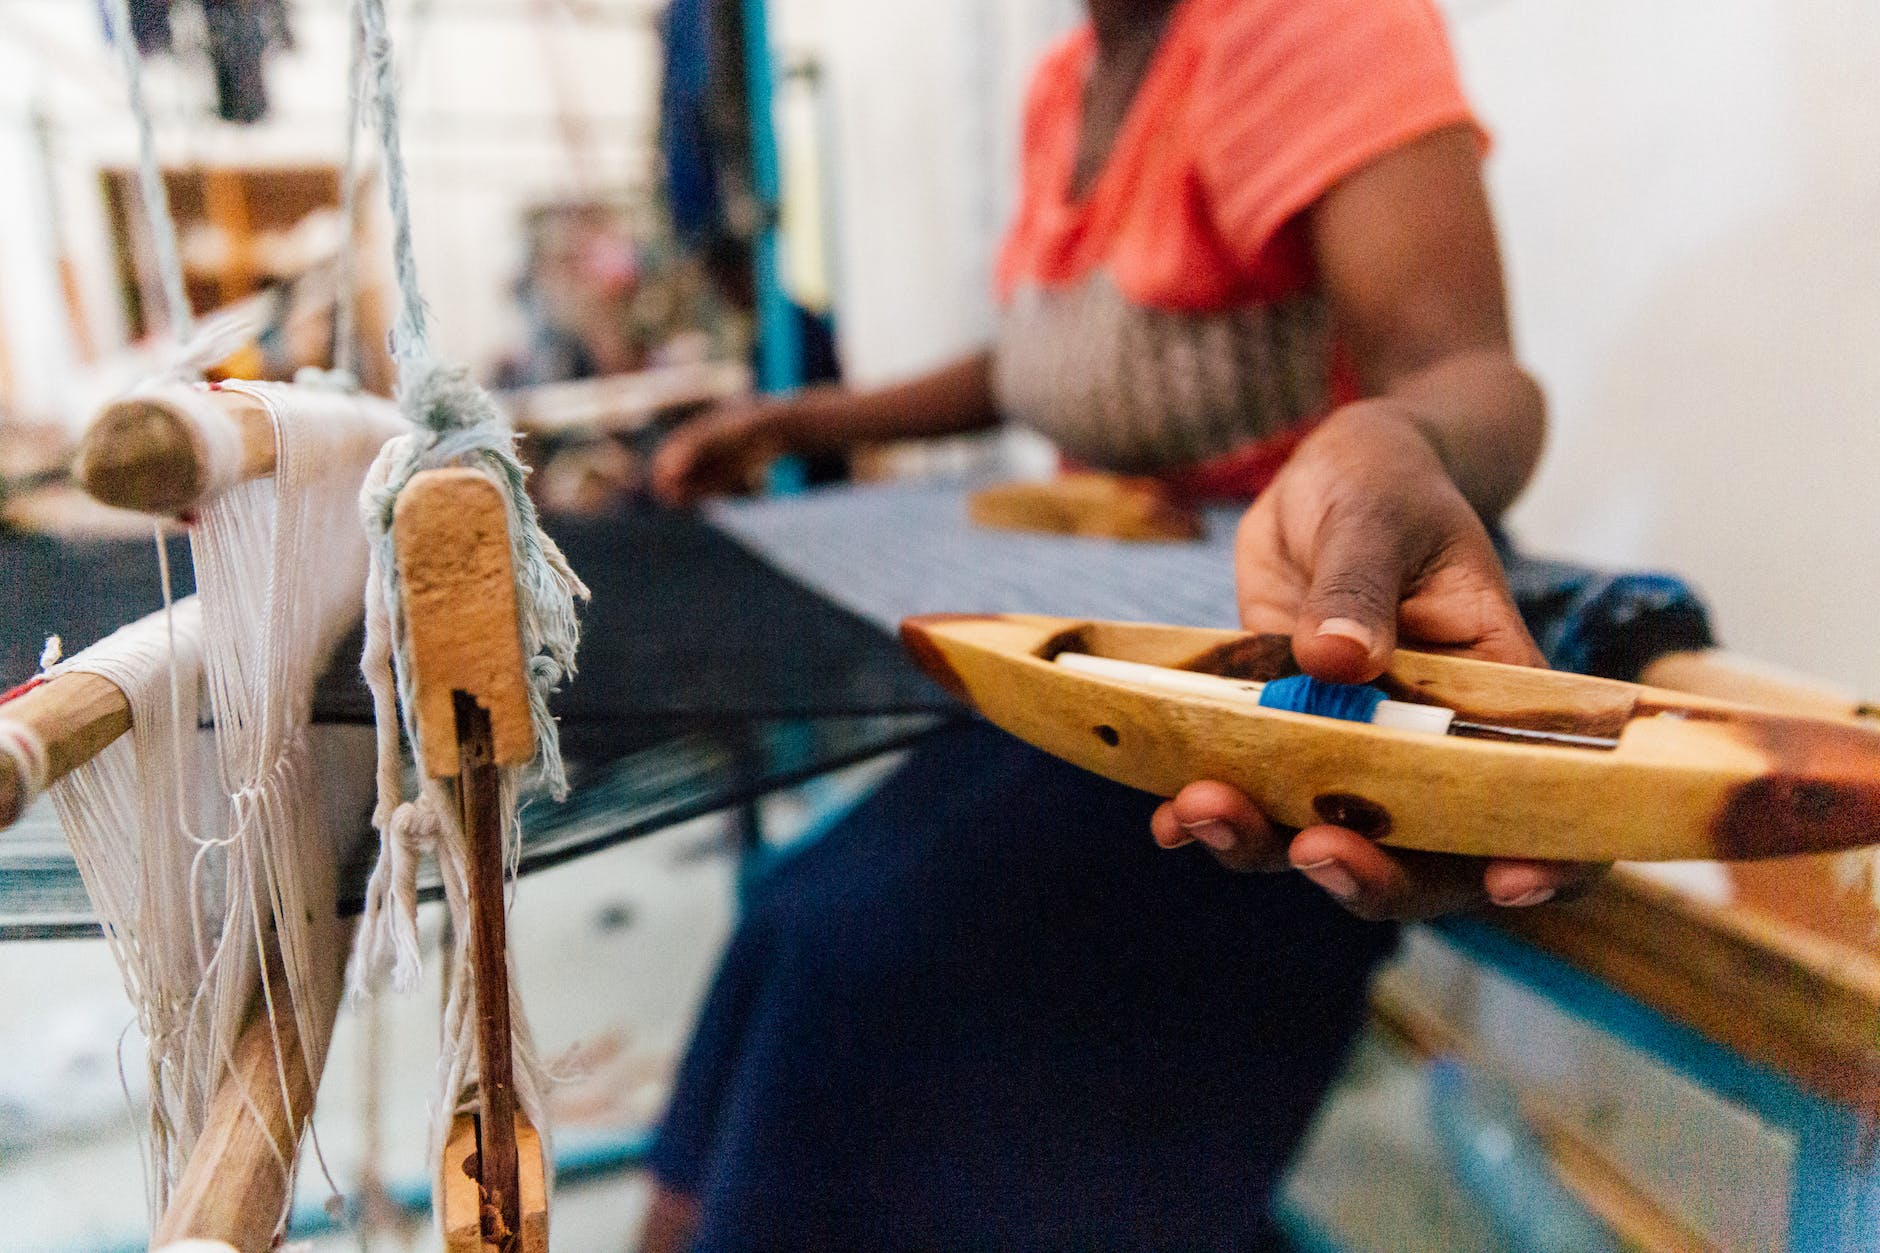 crop black female artisan working on manual loom in workshop